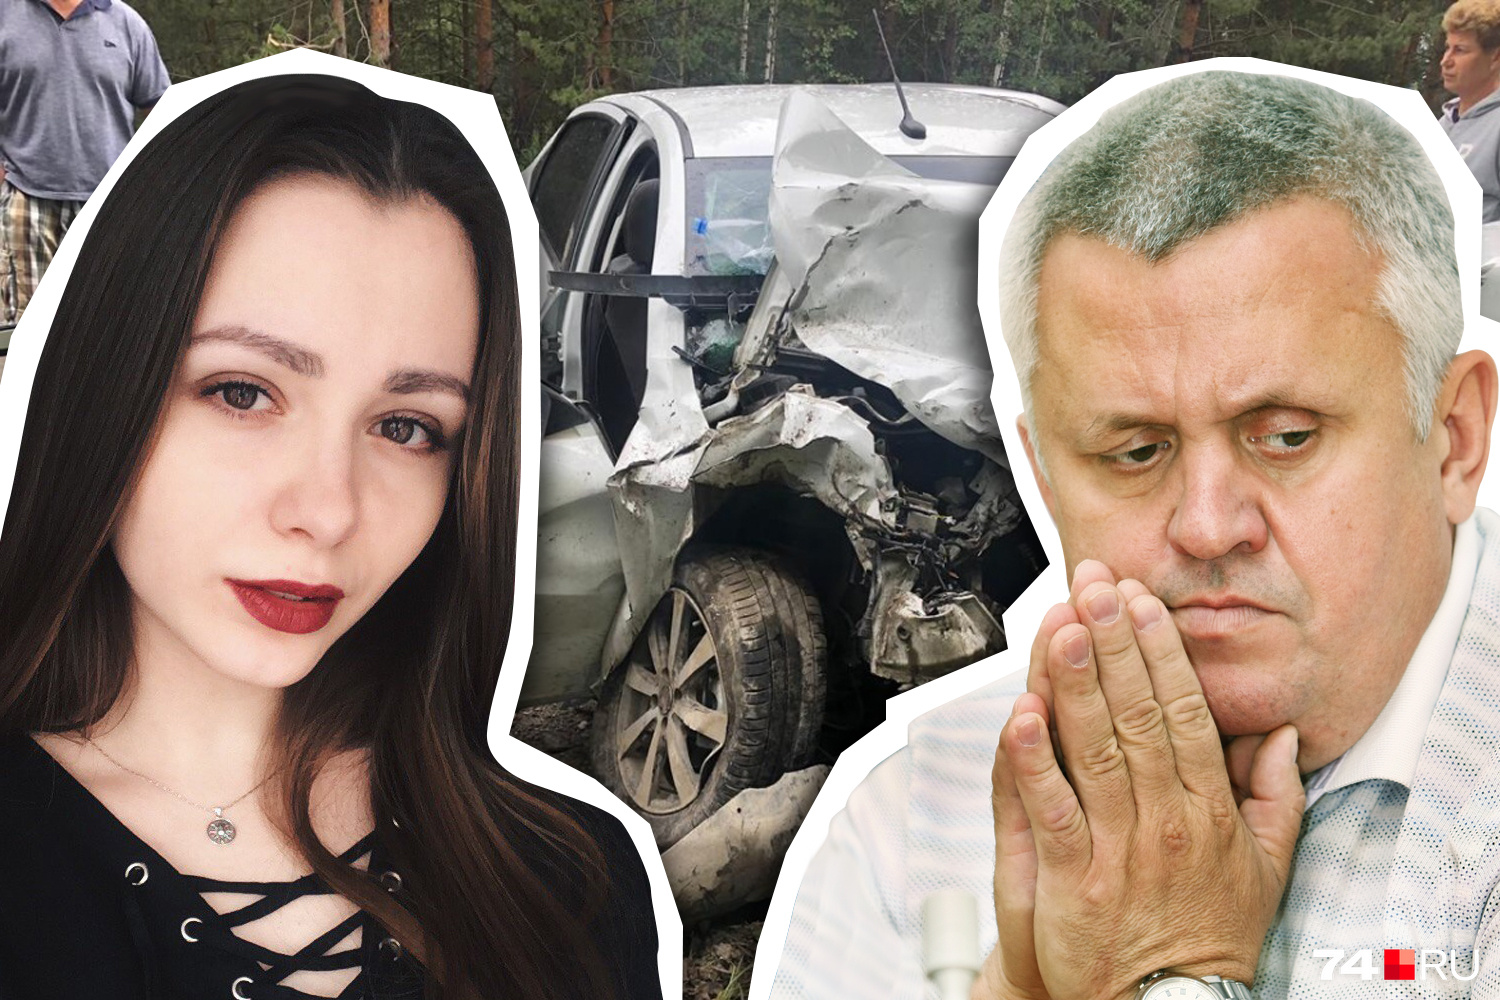 Настя Вяткина была в машине, в которую врезался внедорожник Андрея Косилова. После той аварии она впала в кому, а выйдя из нее, потеряла зрение, стала инвалидом